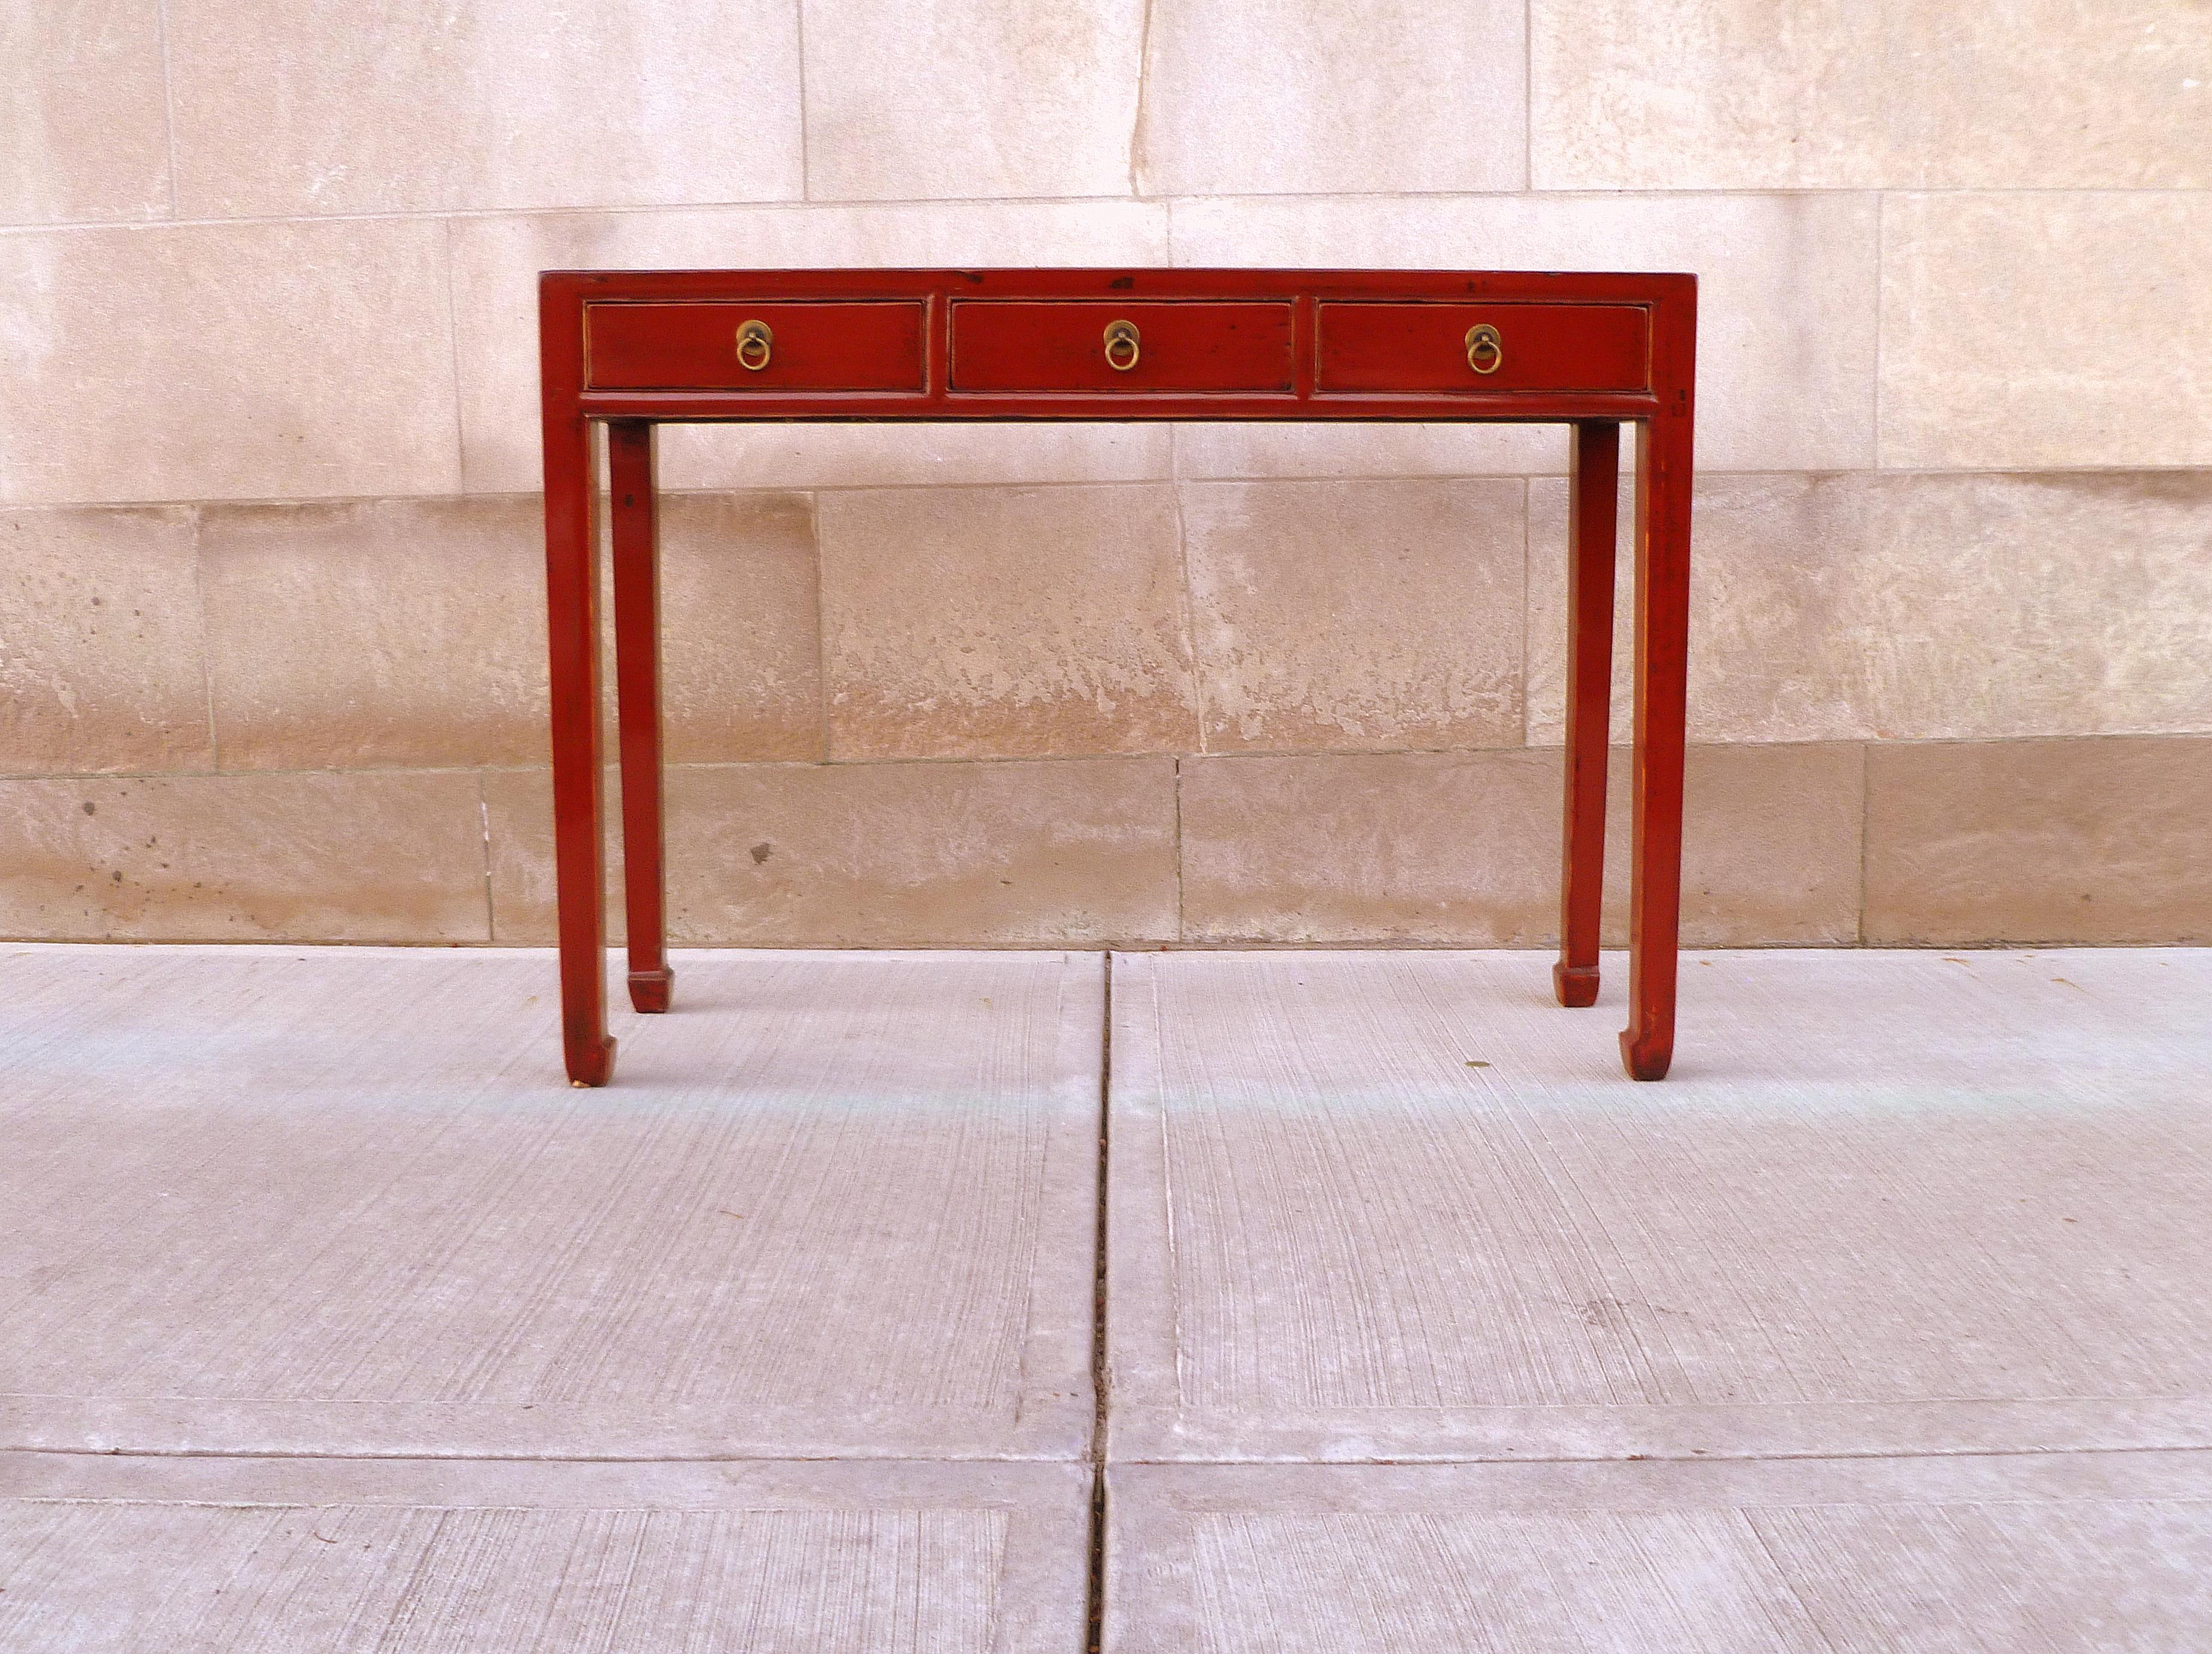 Rot lackierter Konsolentisch mit drei Schubladen und nussbaumfarbener Tischplatte.
Wir führen hochwertige Möbel mit elegantem Finish, die bereits mehrfach in der Zeitschrift 